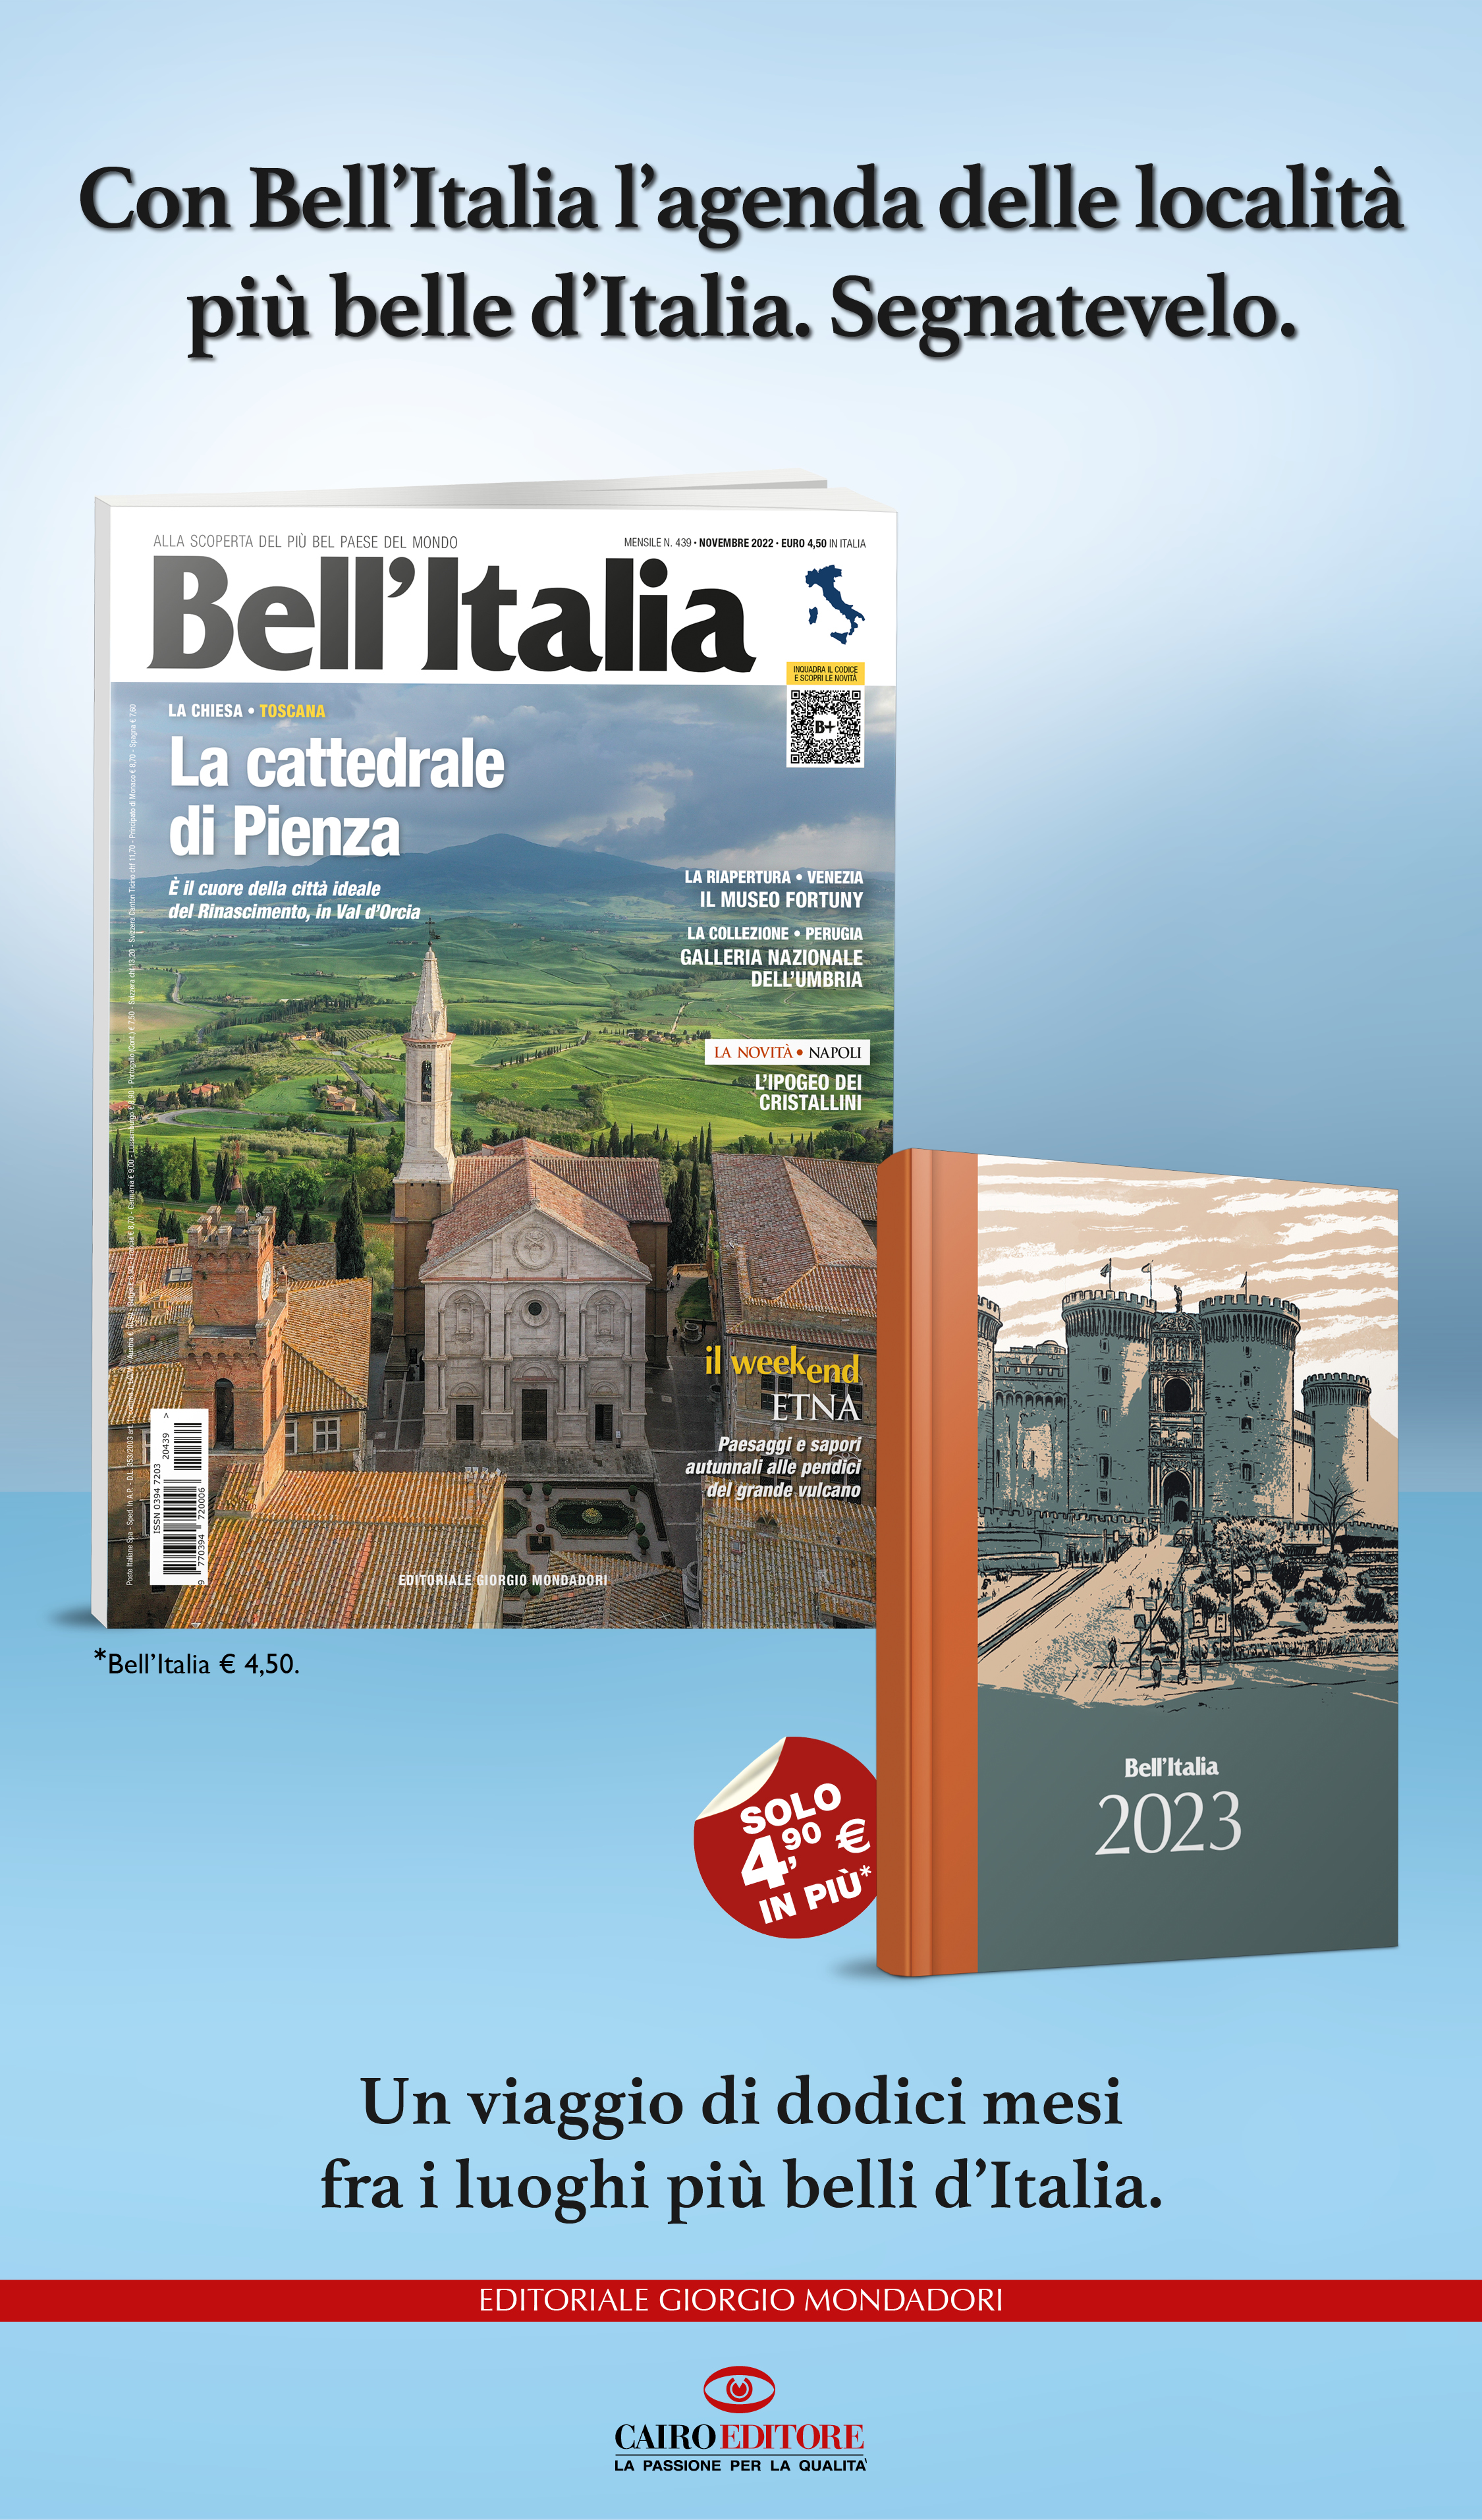 Con Bell’Italia, arrivano  due belle novità.